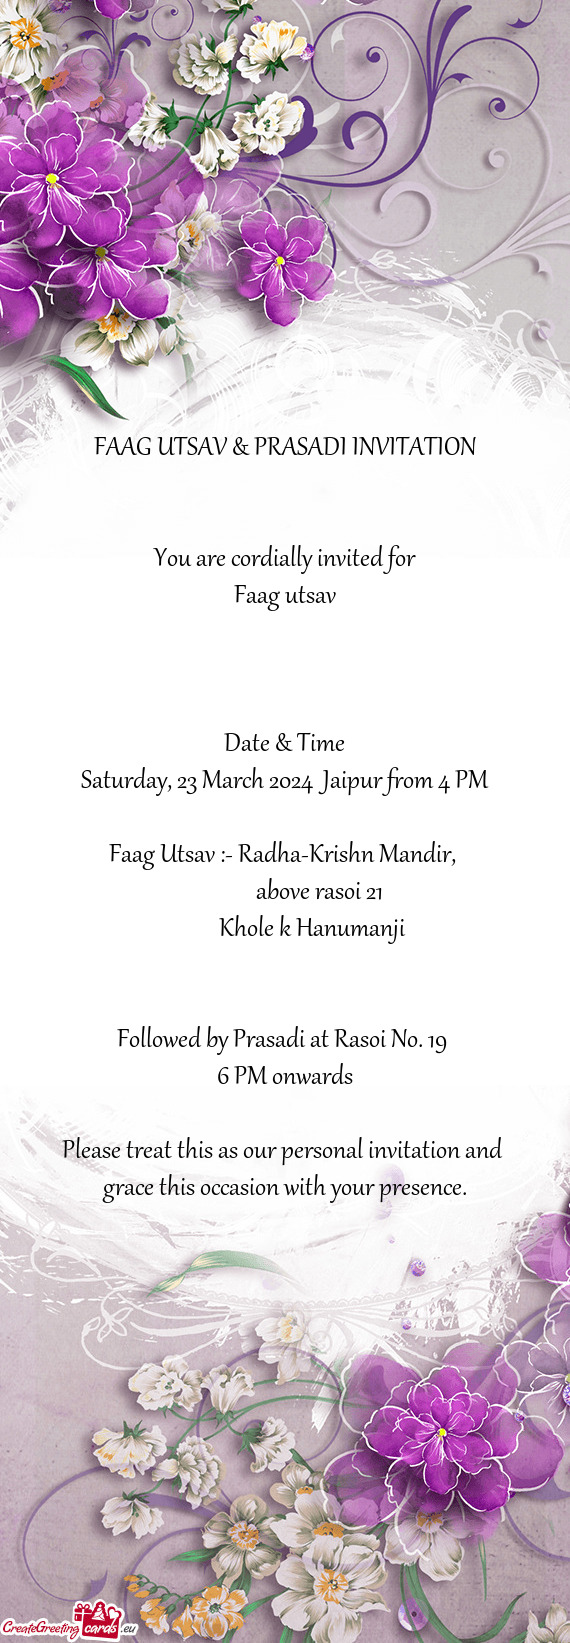 FAAG UTSAV & PRASADI INVITATION